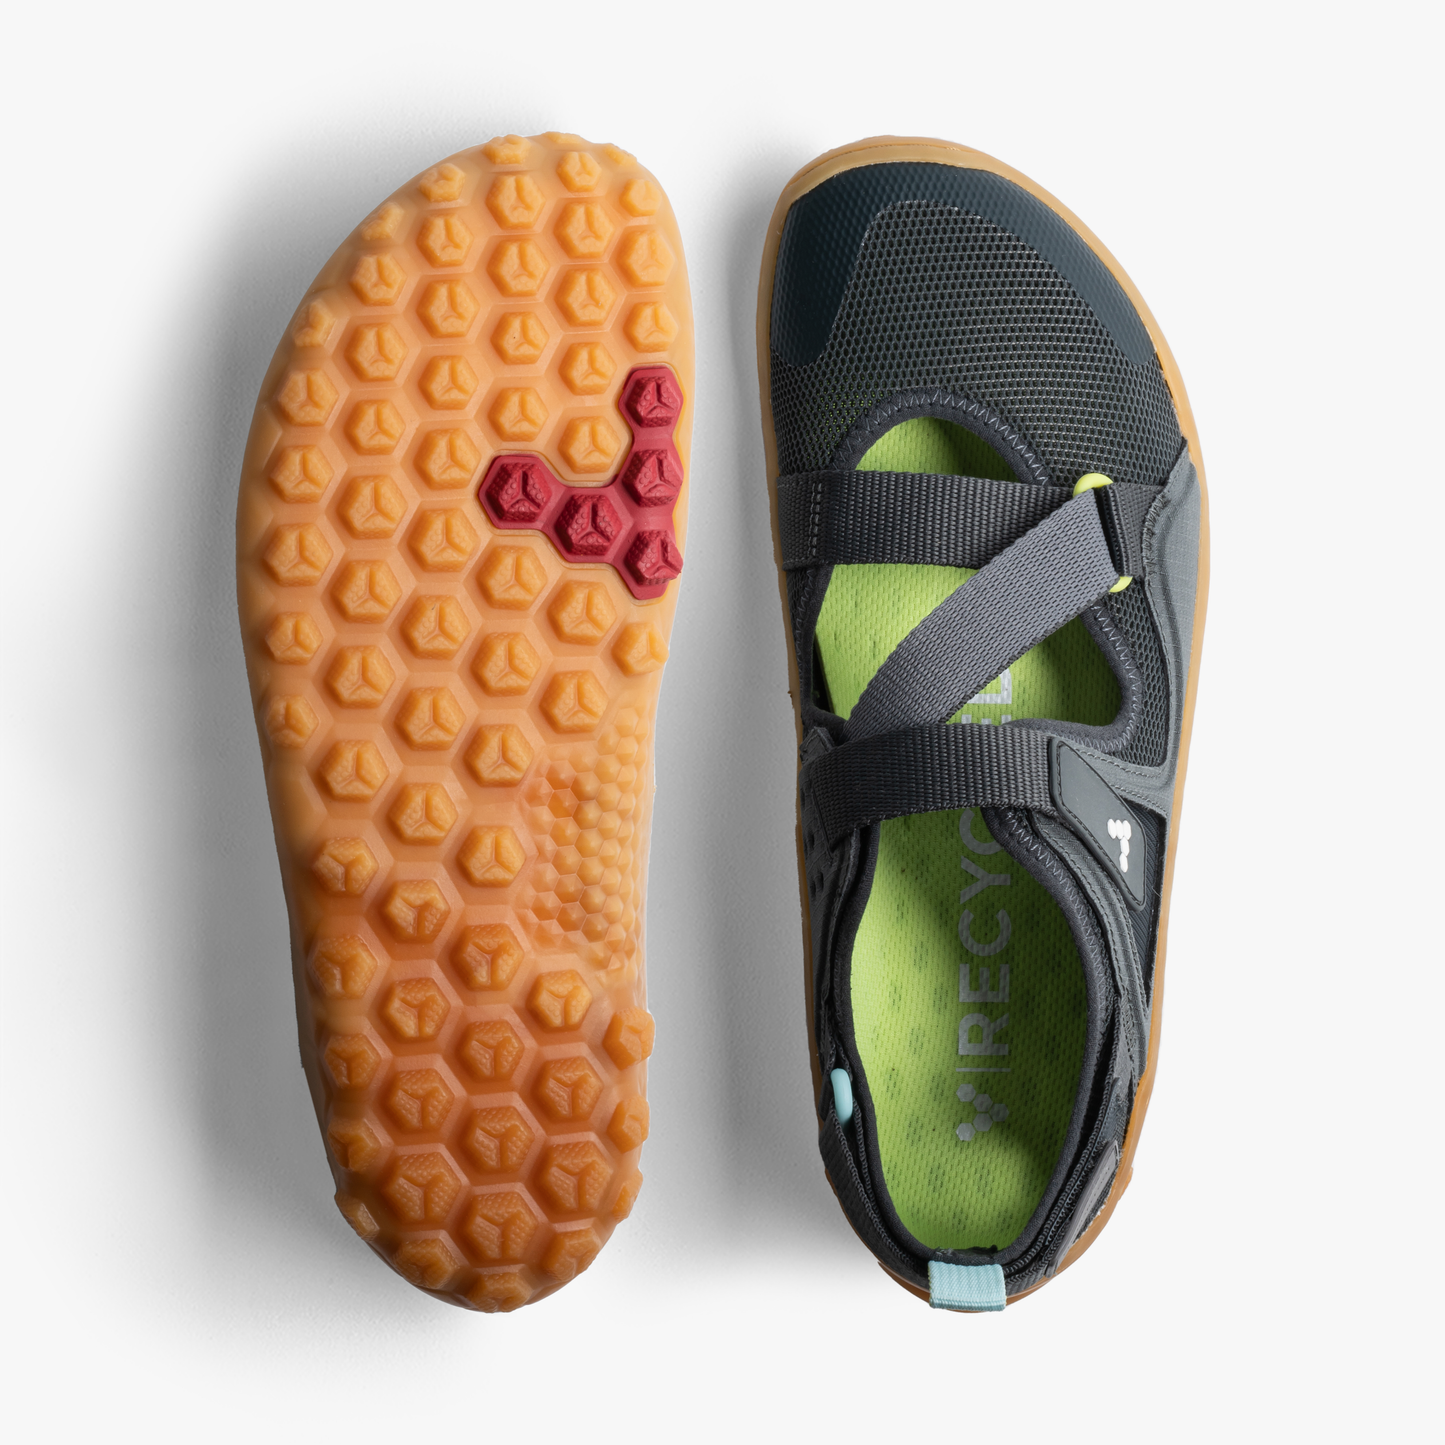 Vivobarefoot Tracker Sandal Mens - Charcoal/Gum